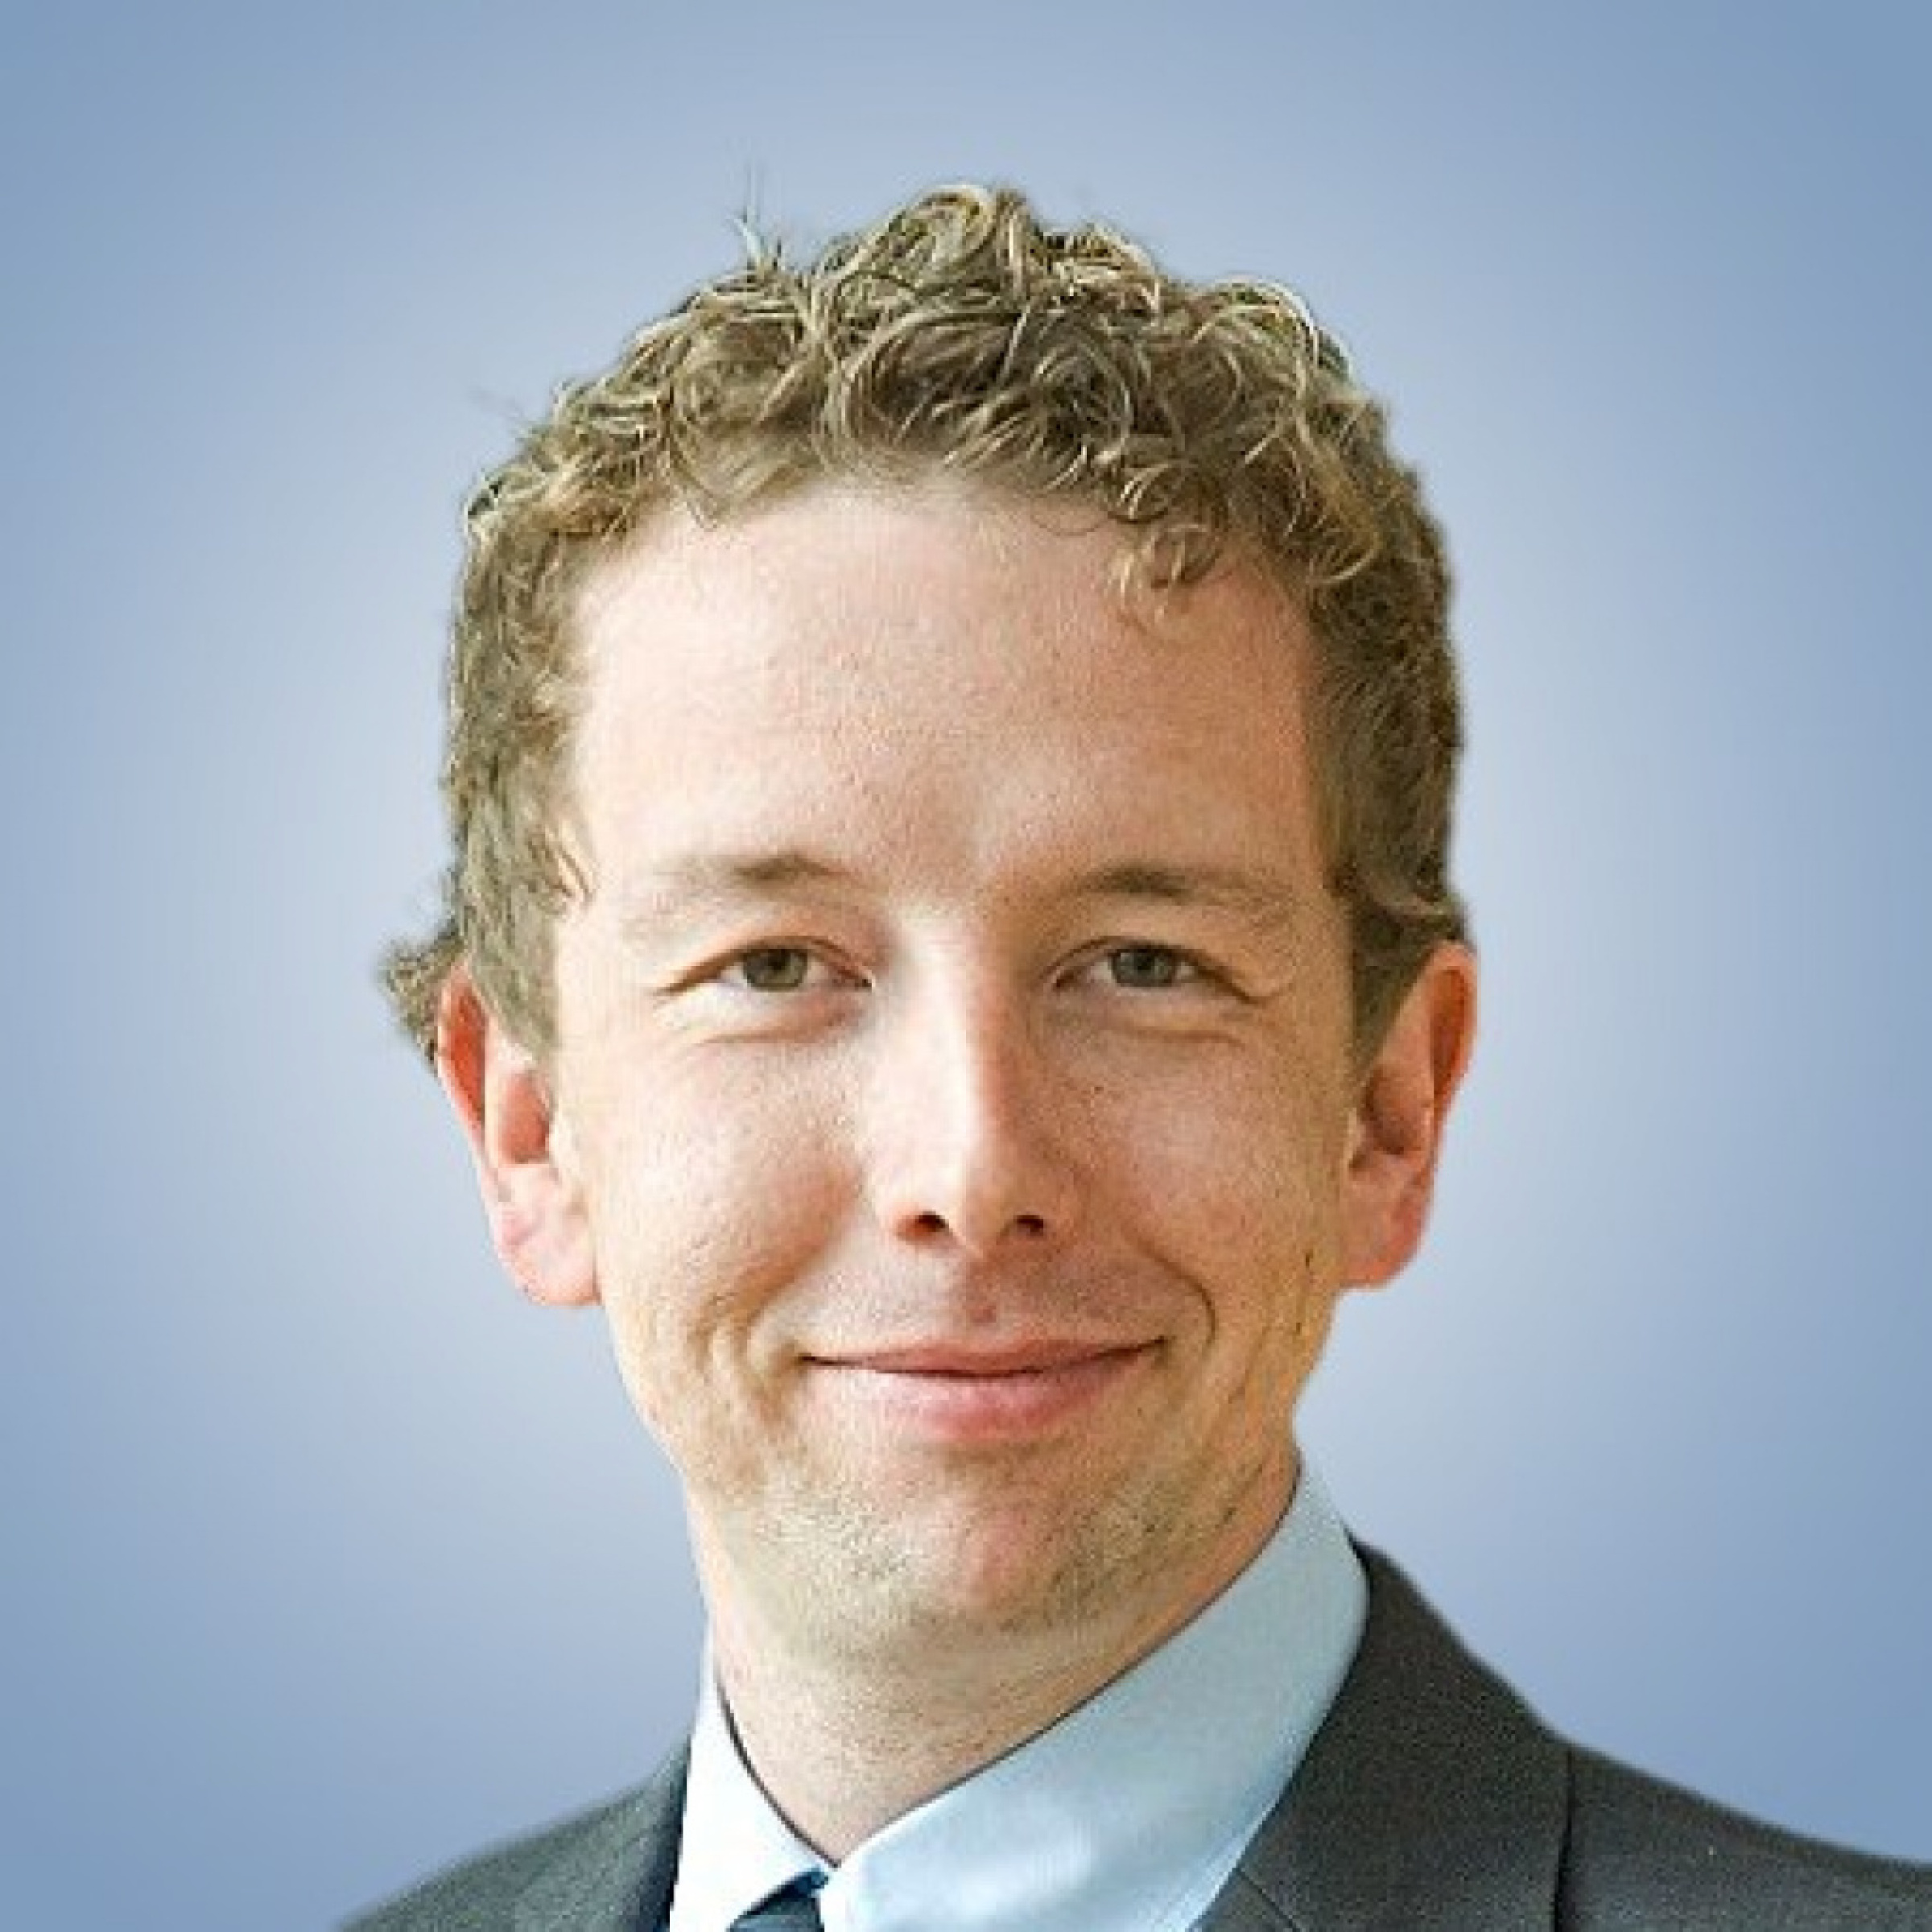 Portrait von Ulrich Erven, Projektleiter Geschäftsstelle E-Mobilität und Themenfeldleiter "Mobilität" bei der LandesEnergieAgentur Hessen.